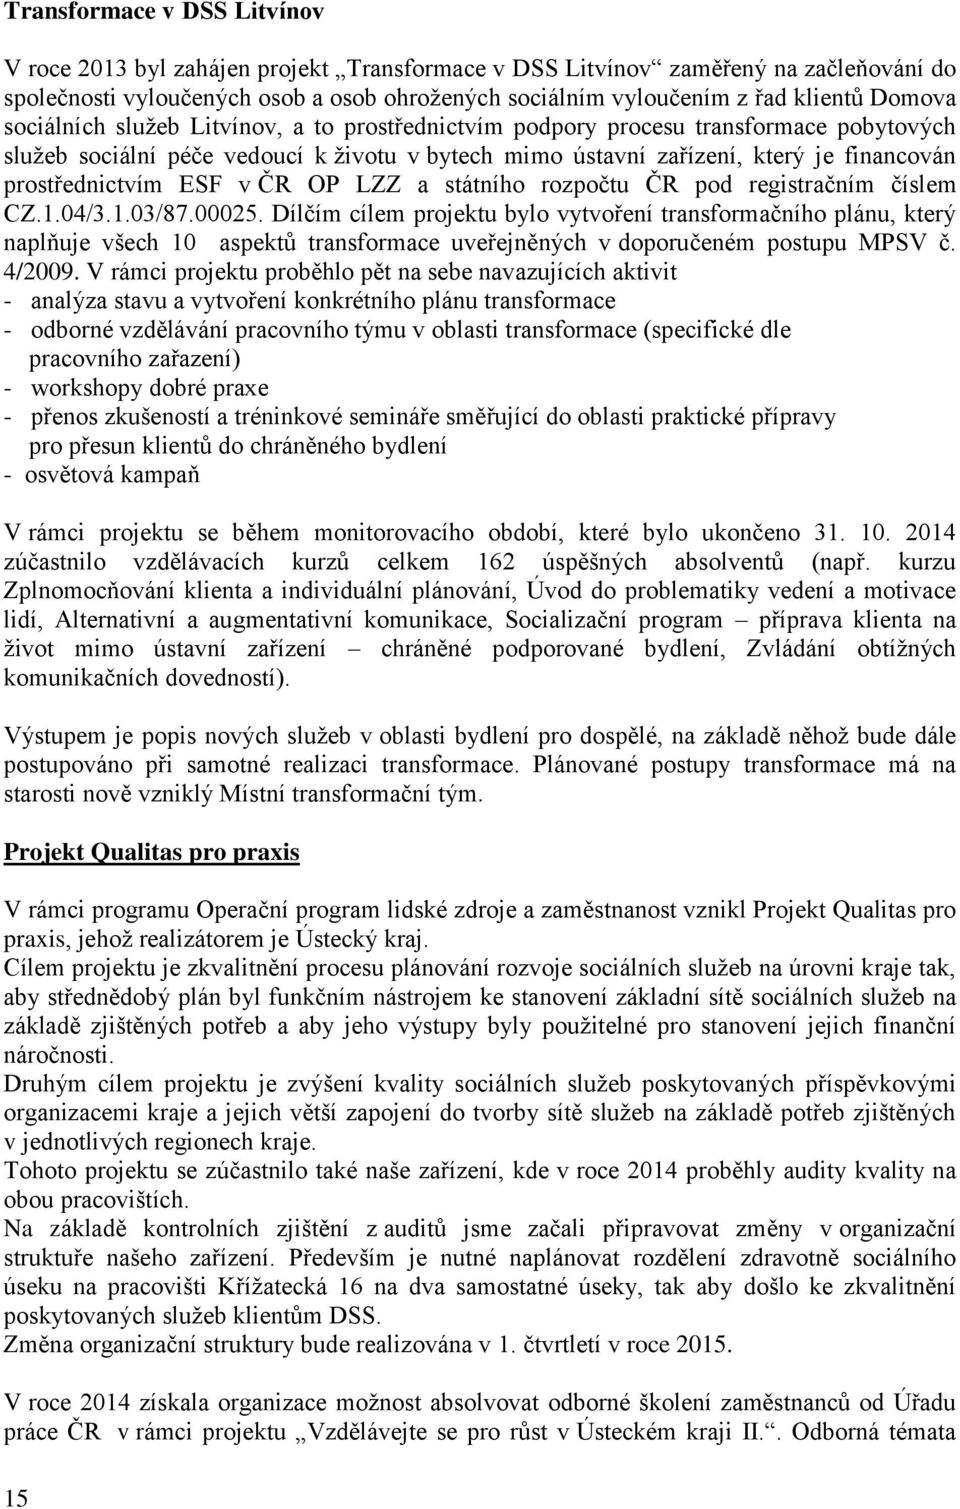 prostřednictvím ESF v ČR OP LZZ a státního rozpočtu ČR pod registračním číslem CZ.1.04/3.1.03/87.00025.